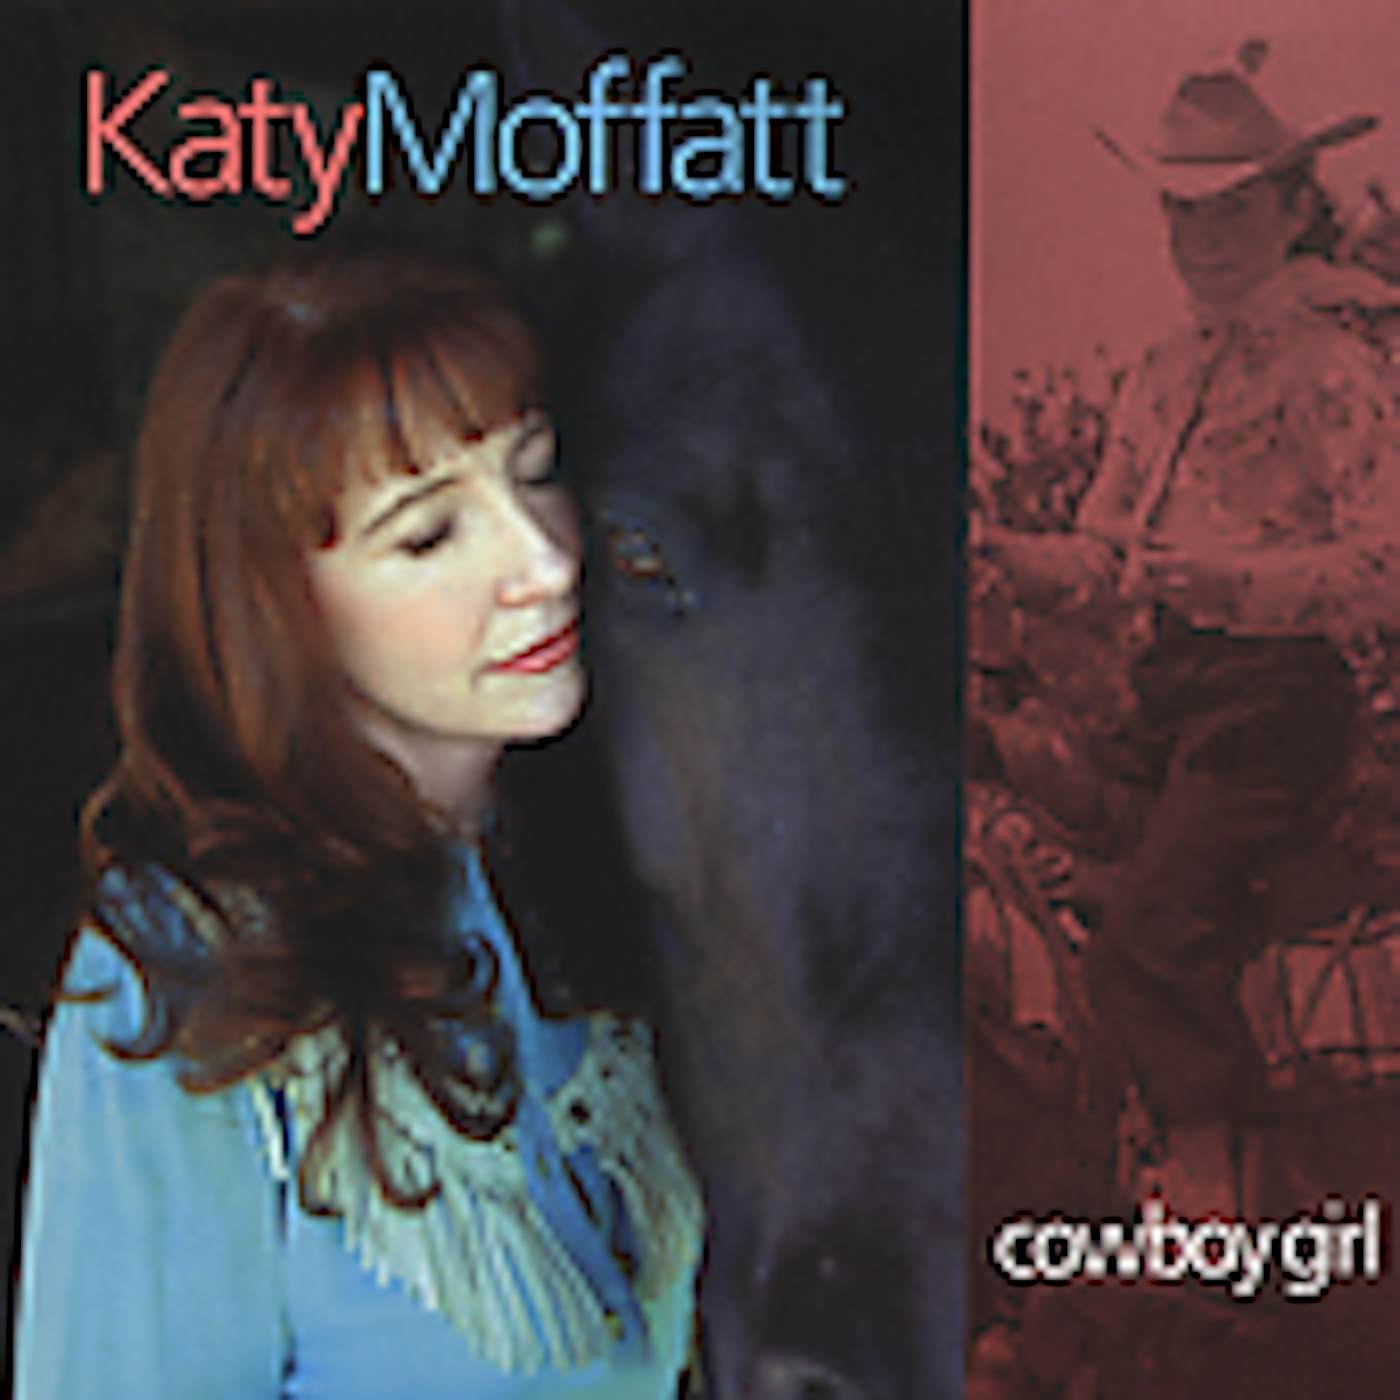 Katy Moffatt COWBOY GIRL CD